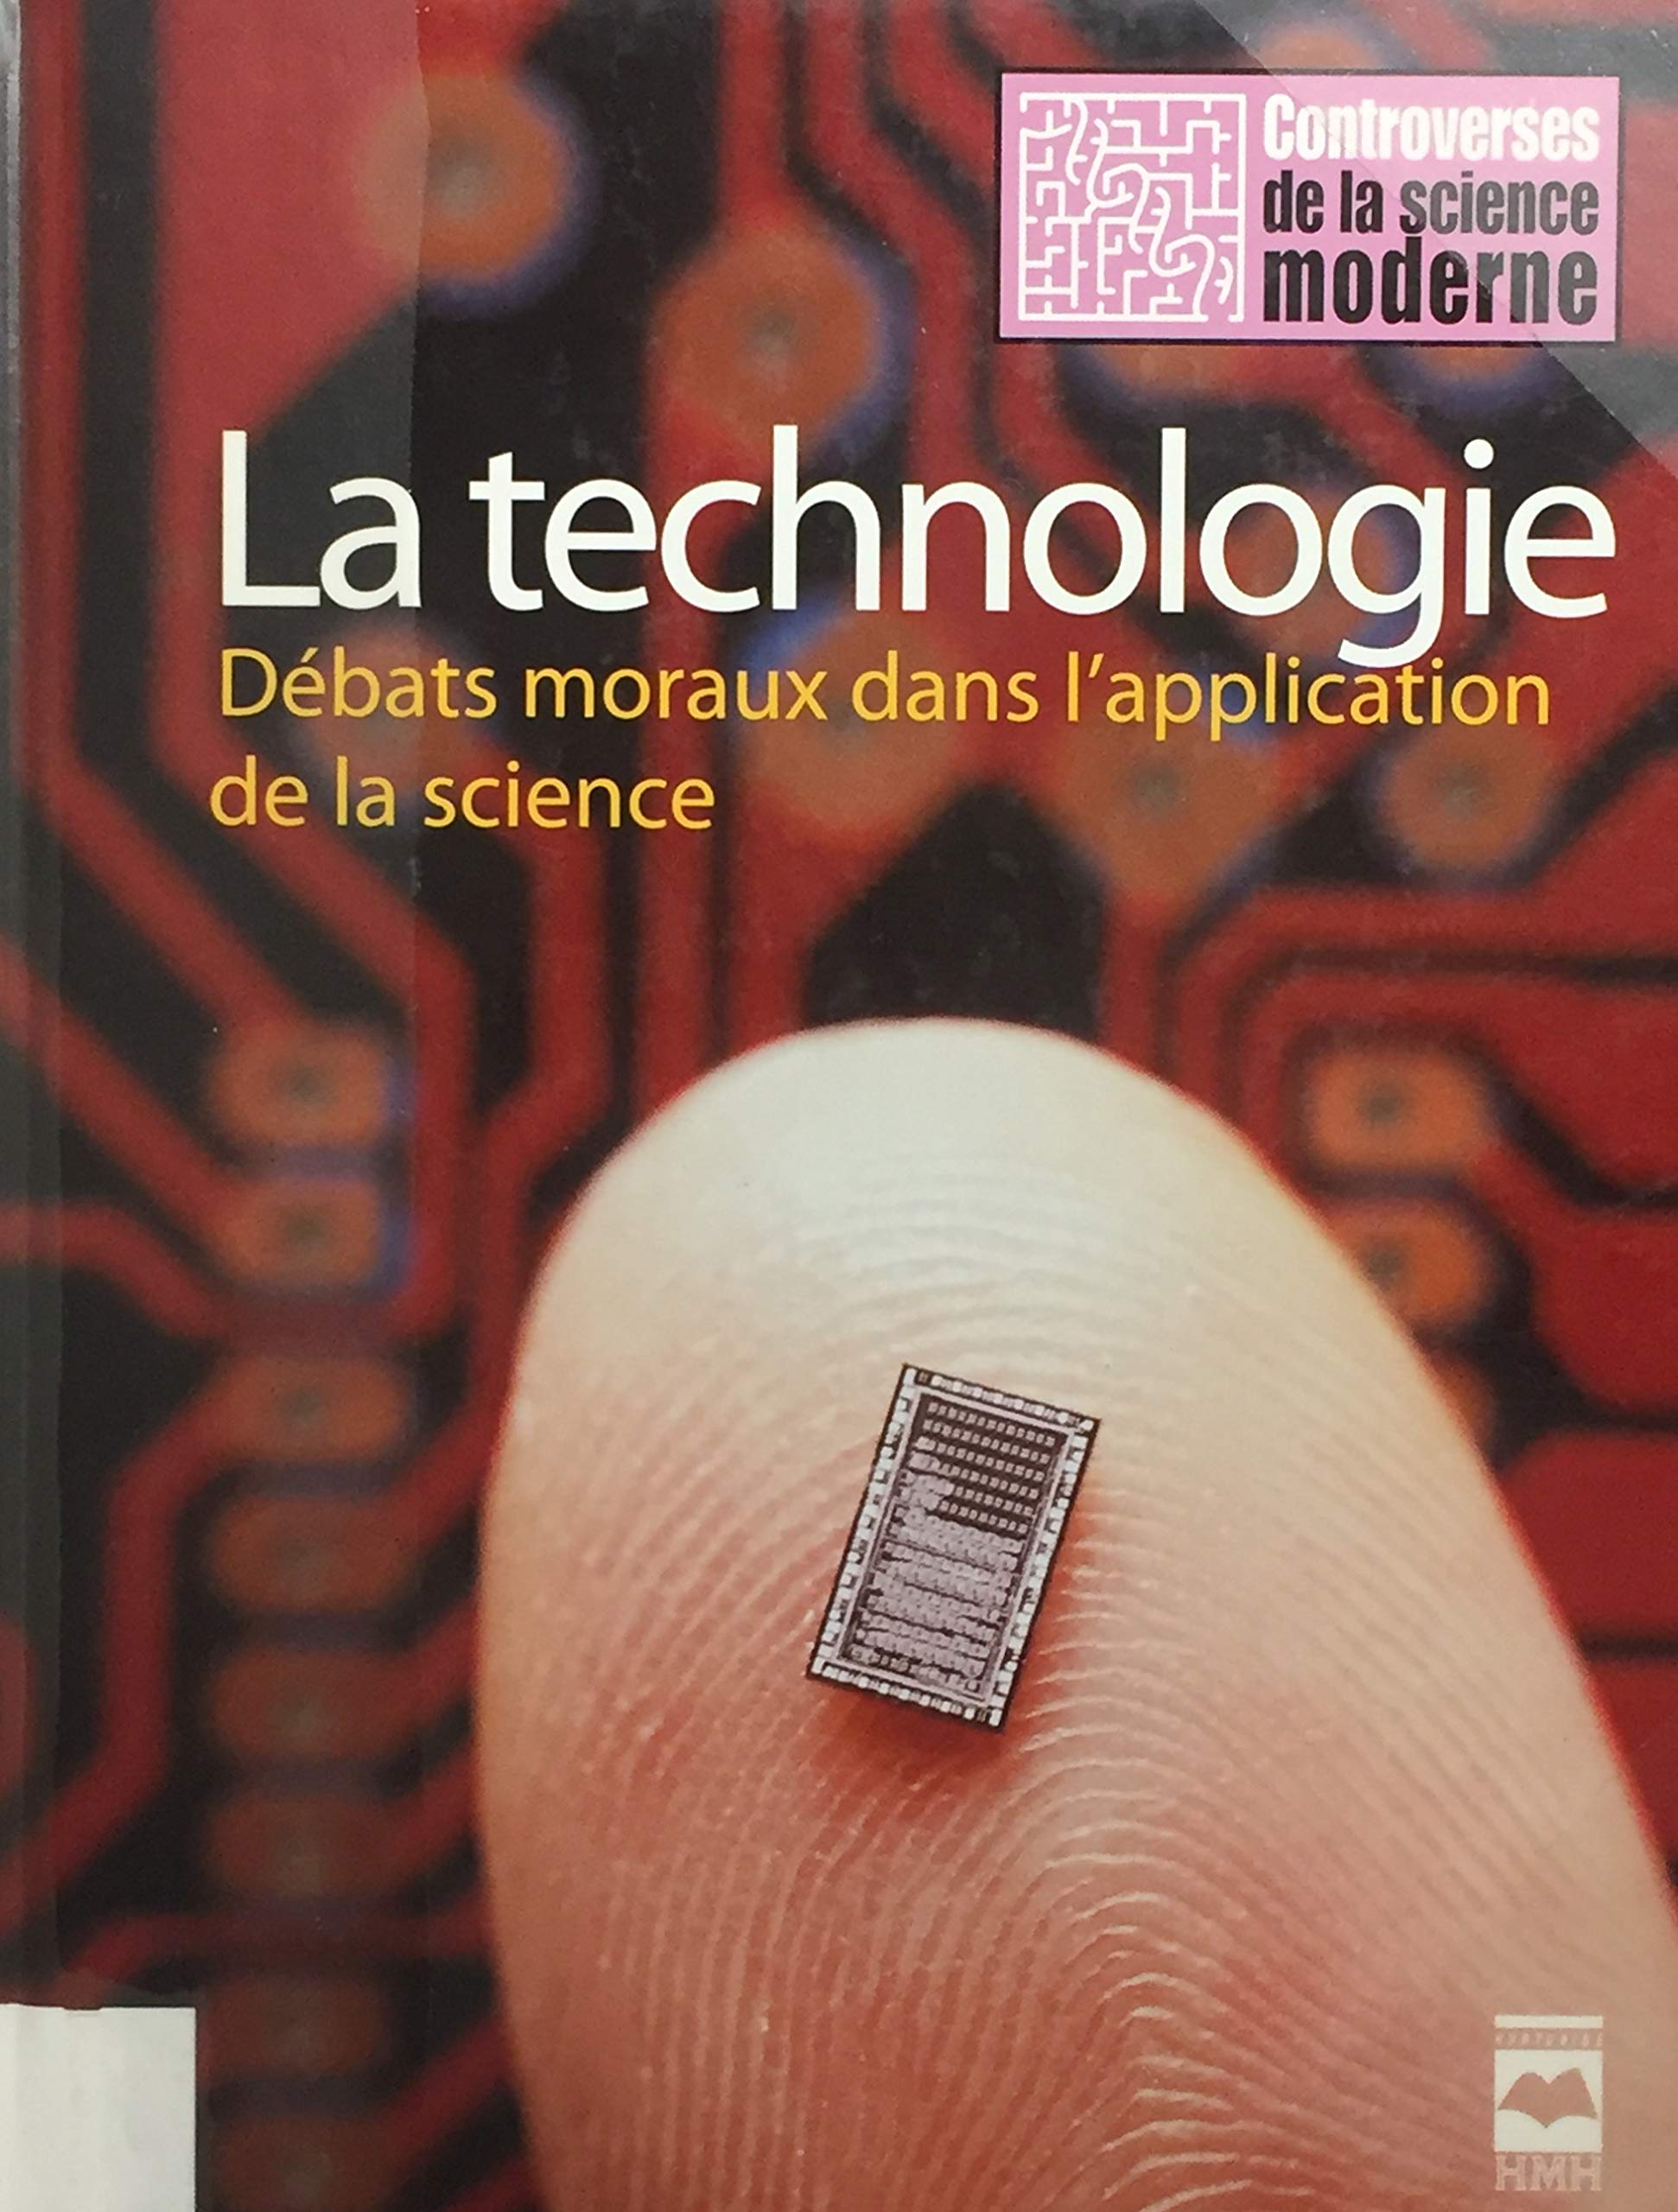 Livre ISBN 2896471170 La technologie : Débats moraux dans l'application de la science